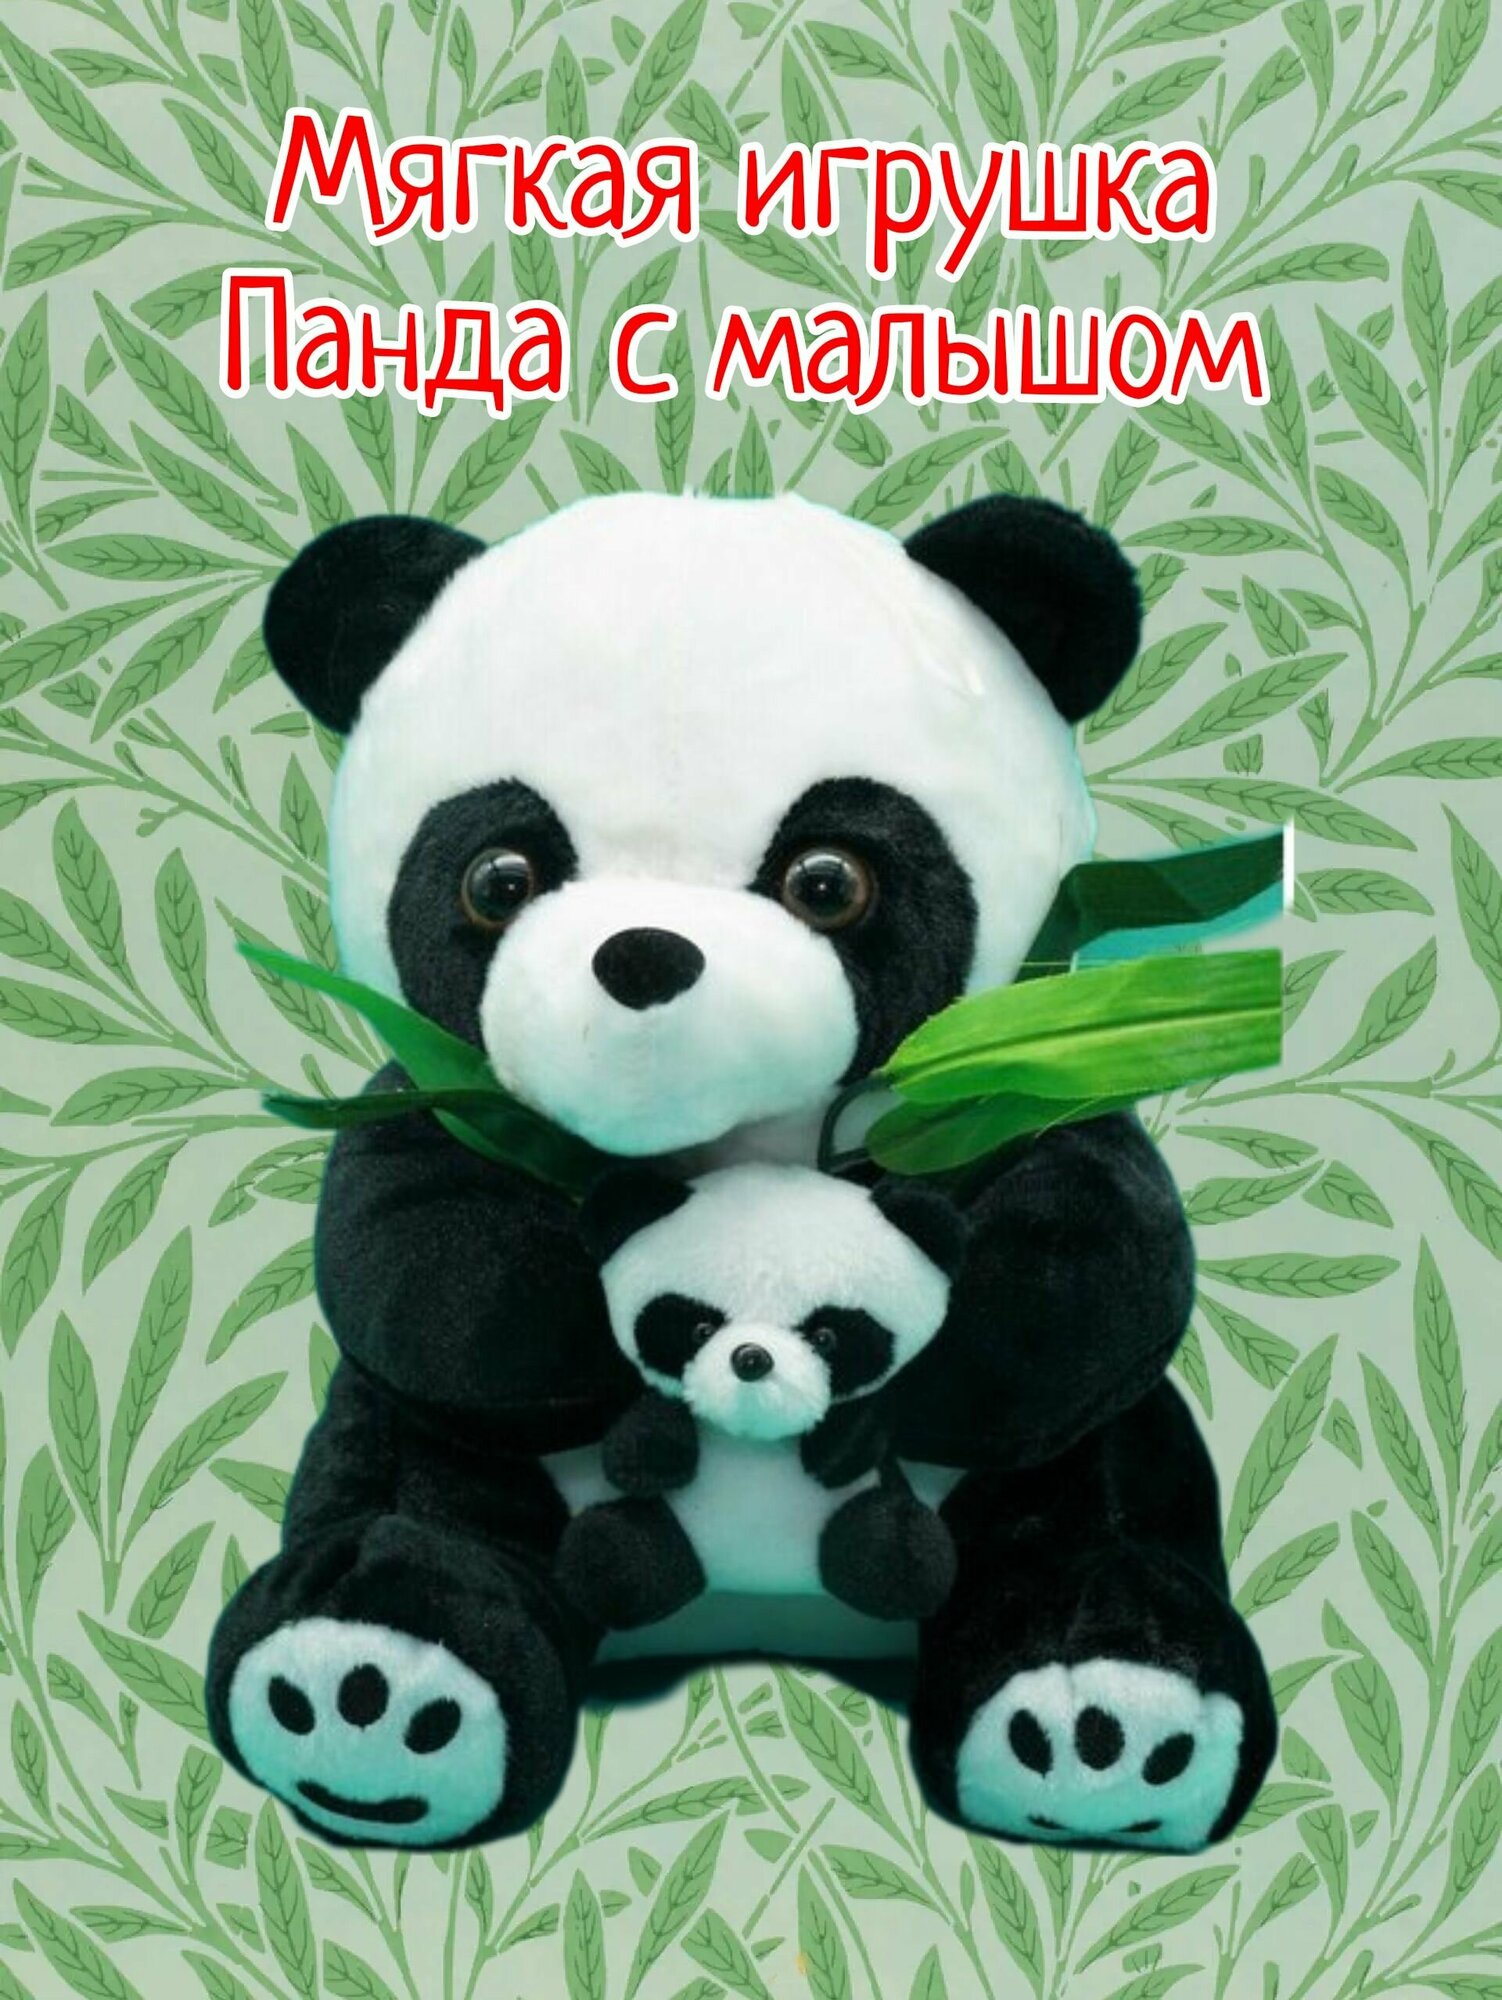 Плюшевая игрушка - Панда с малышом 40см